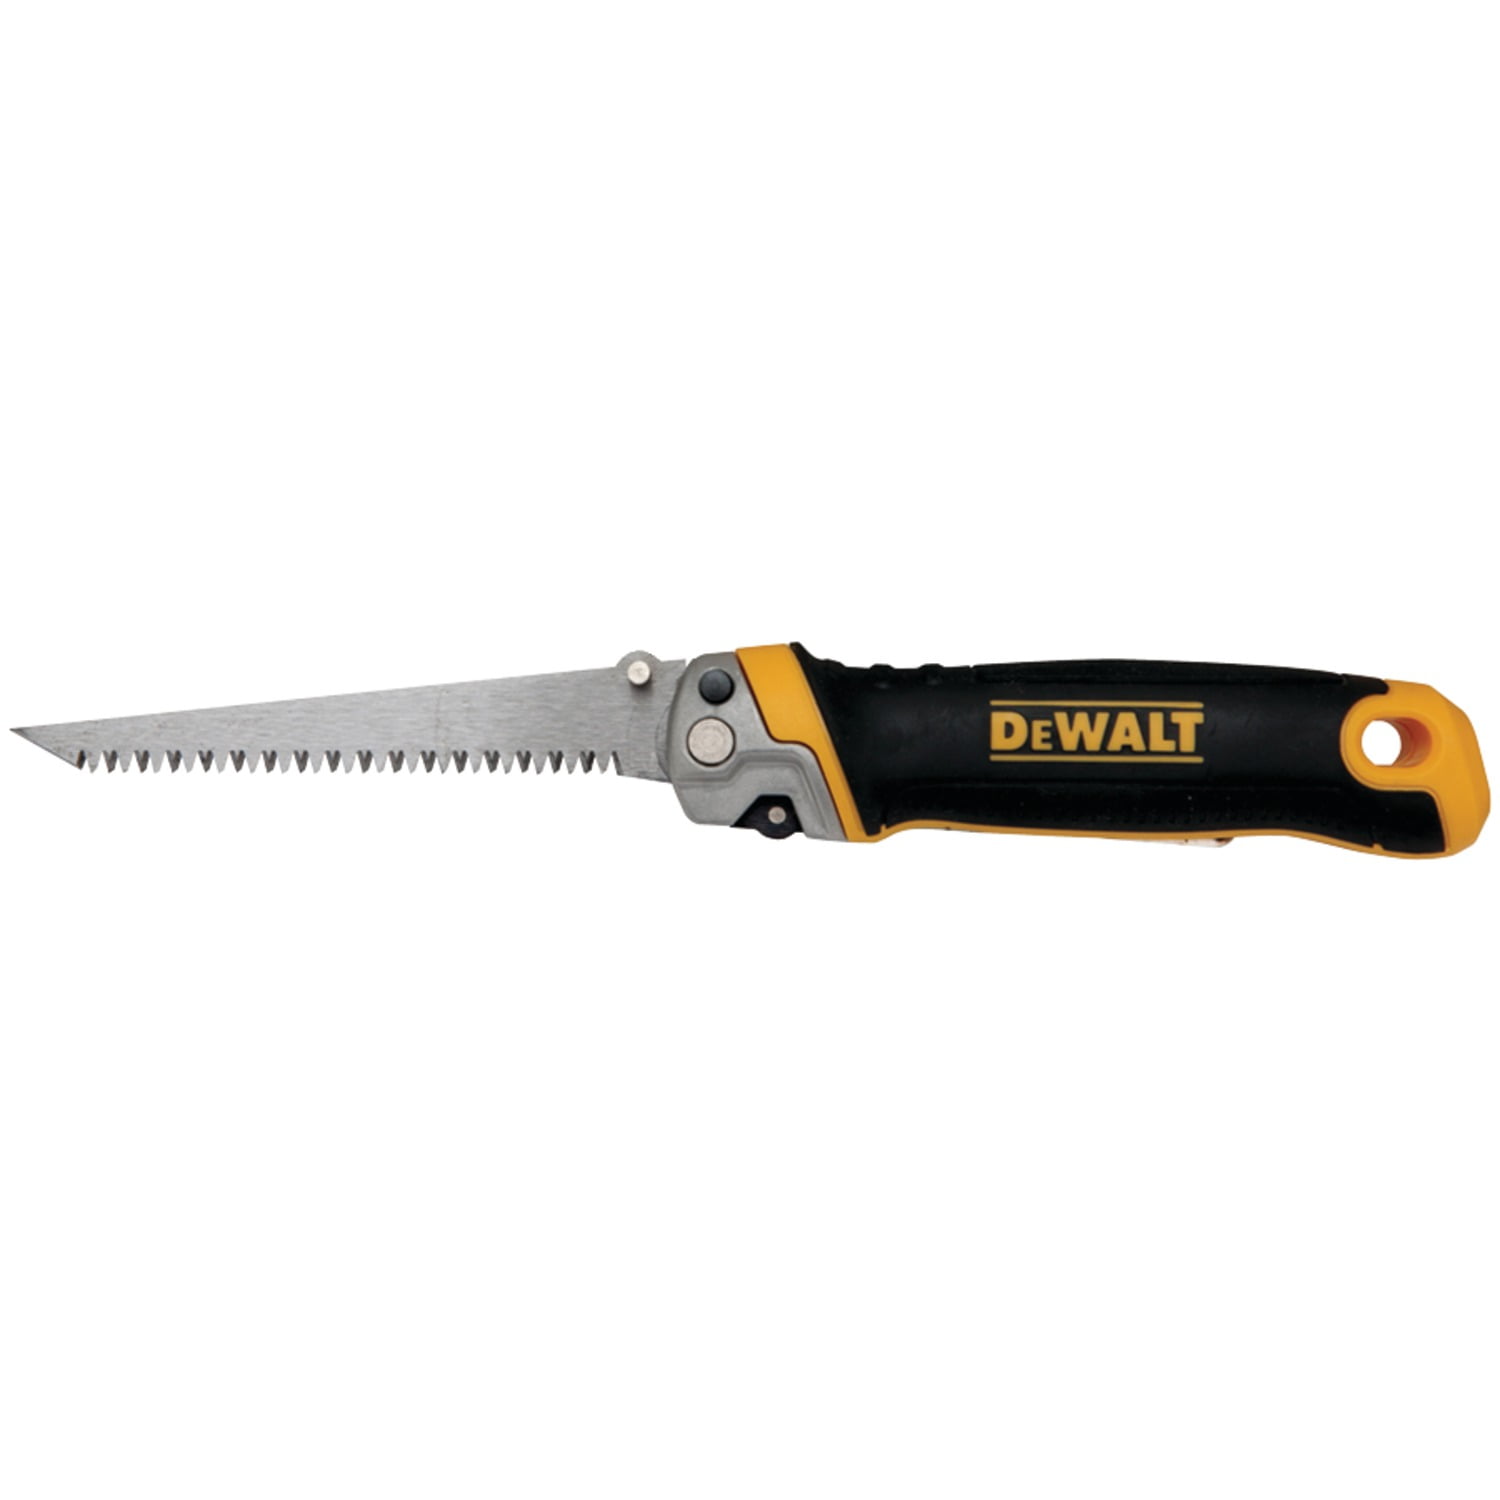 Dewalt-DWHT20541 Flush Cut Saw - Walmart.com